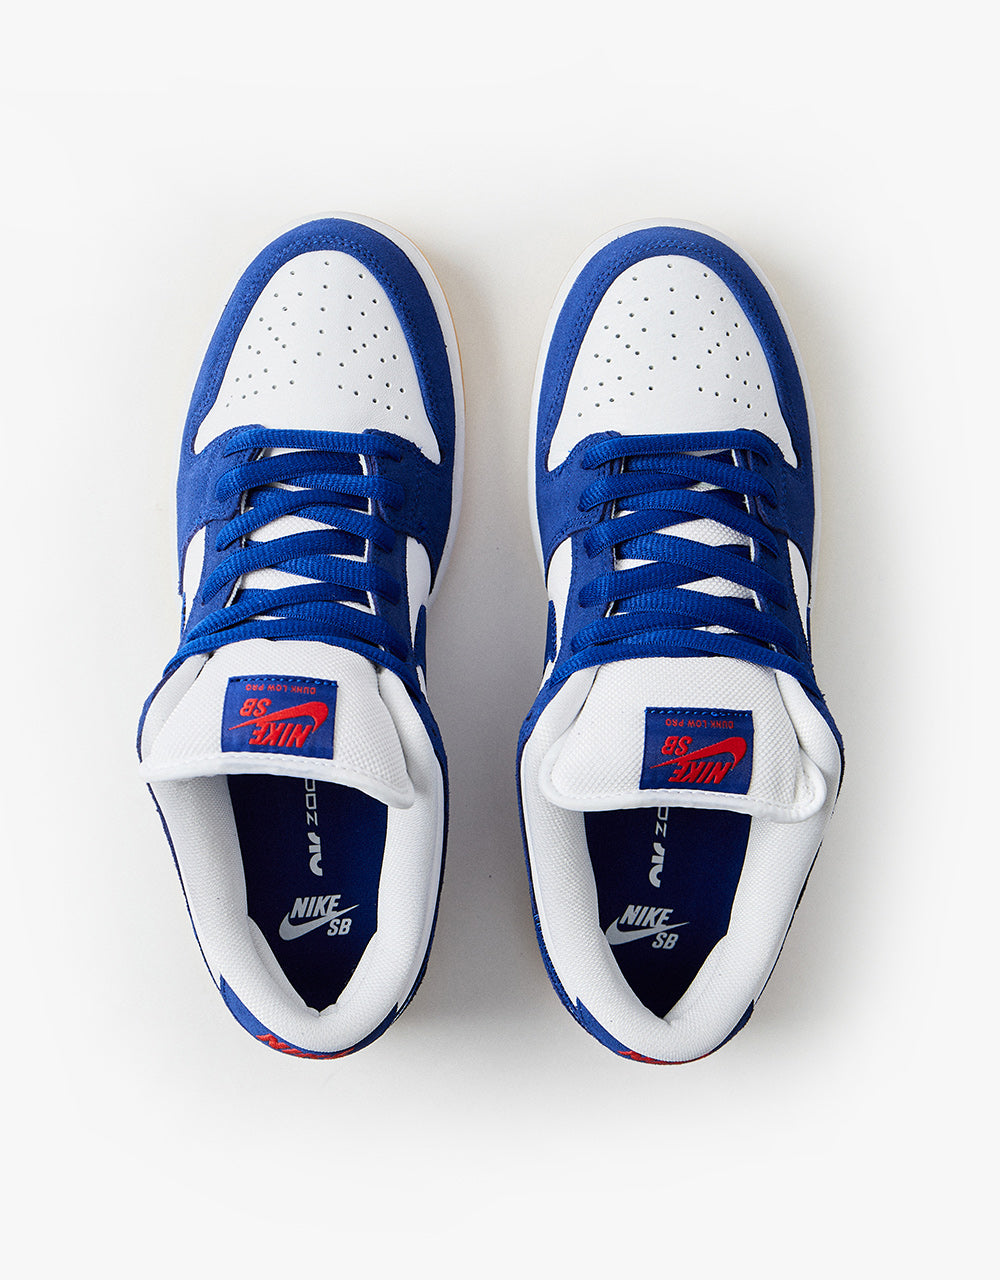 Nike SB - Shoes Launches Route Blue/D Skate \'Dodgers\' Pro Dunk Royal Premium Deep One – Low